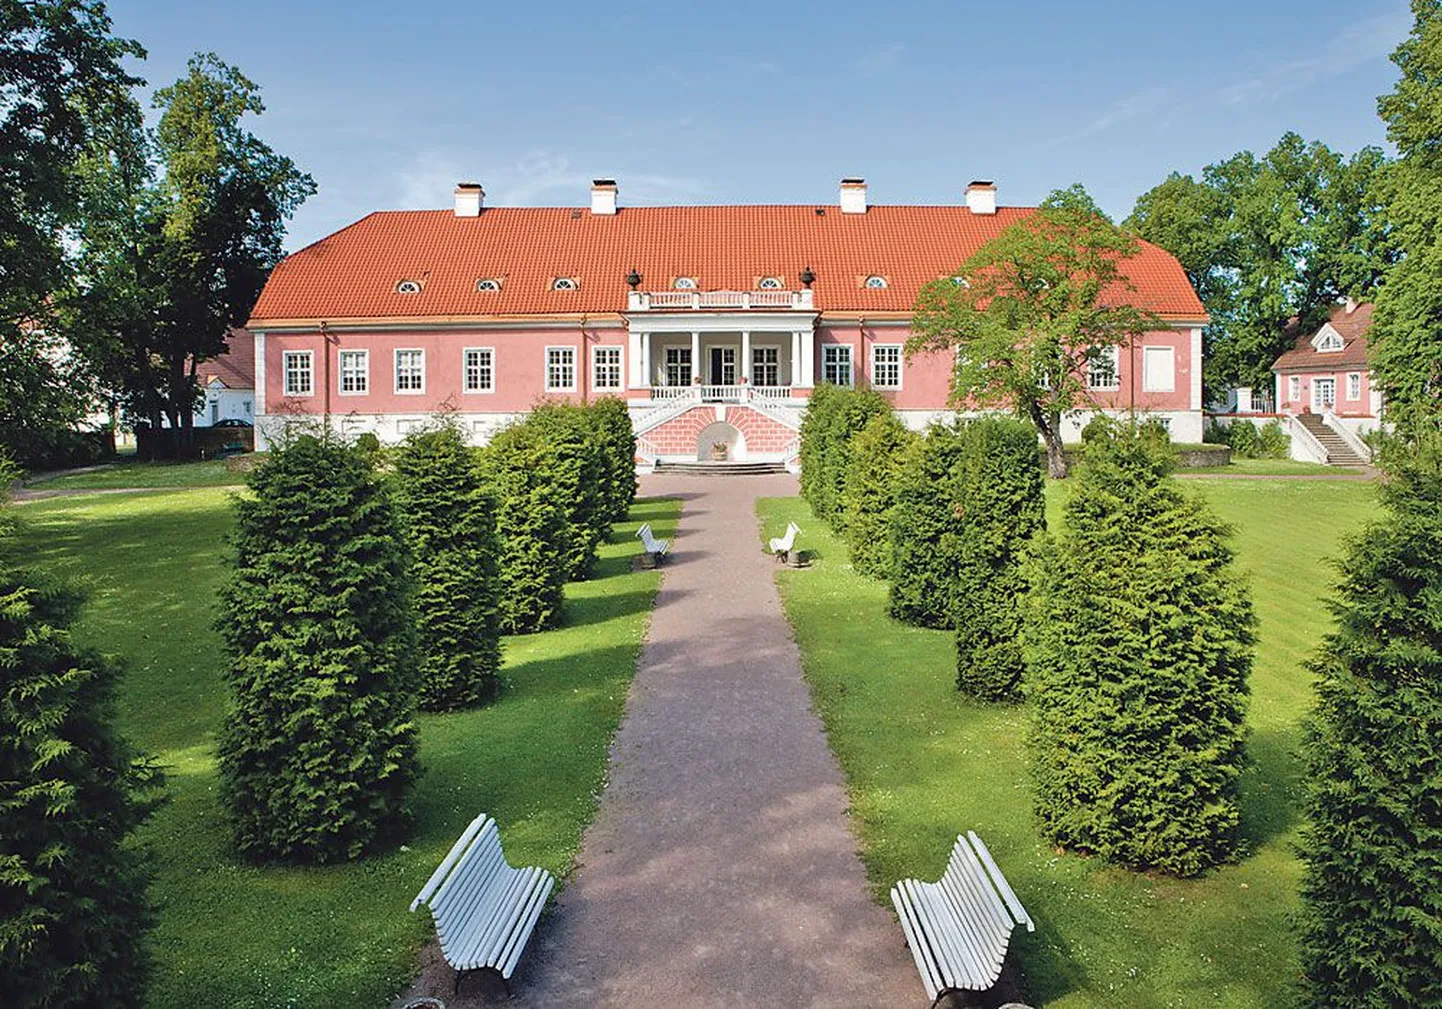 В господском доме мызы Сагади расположен музей, рассказывающий о быте прибалтийских баронов в XIX веке.